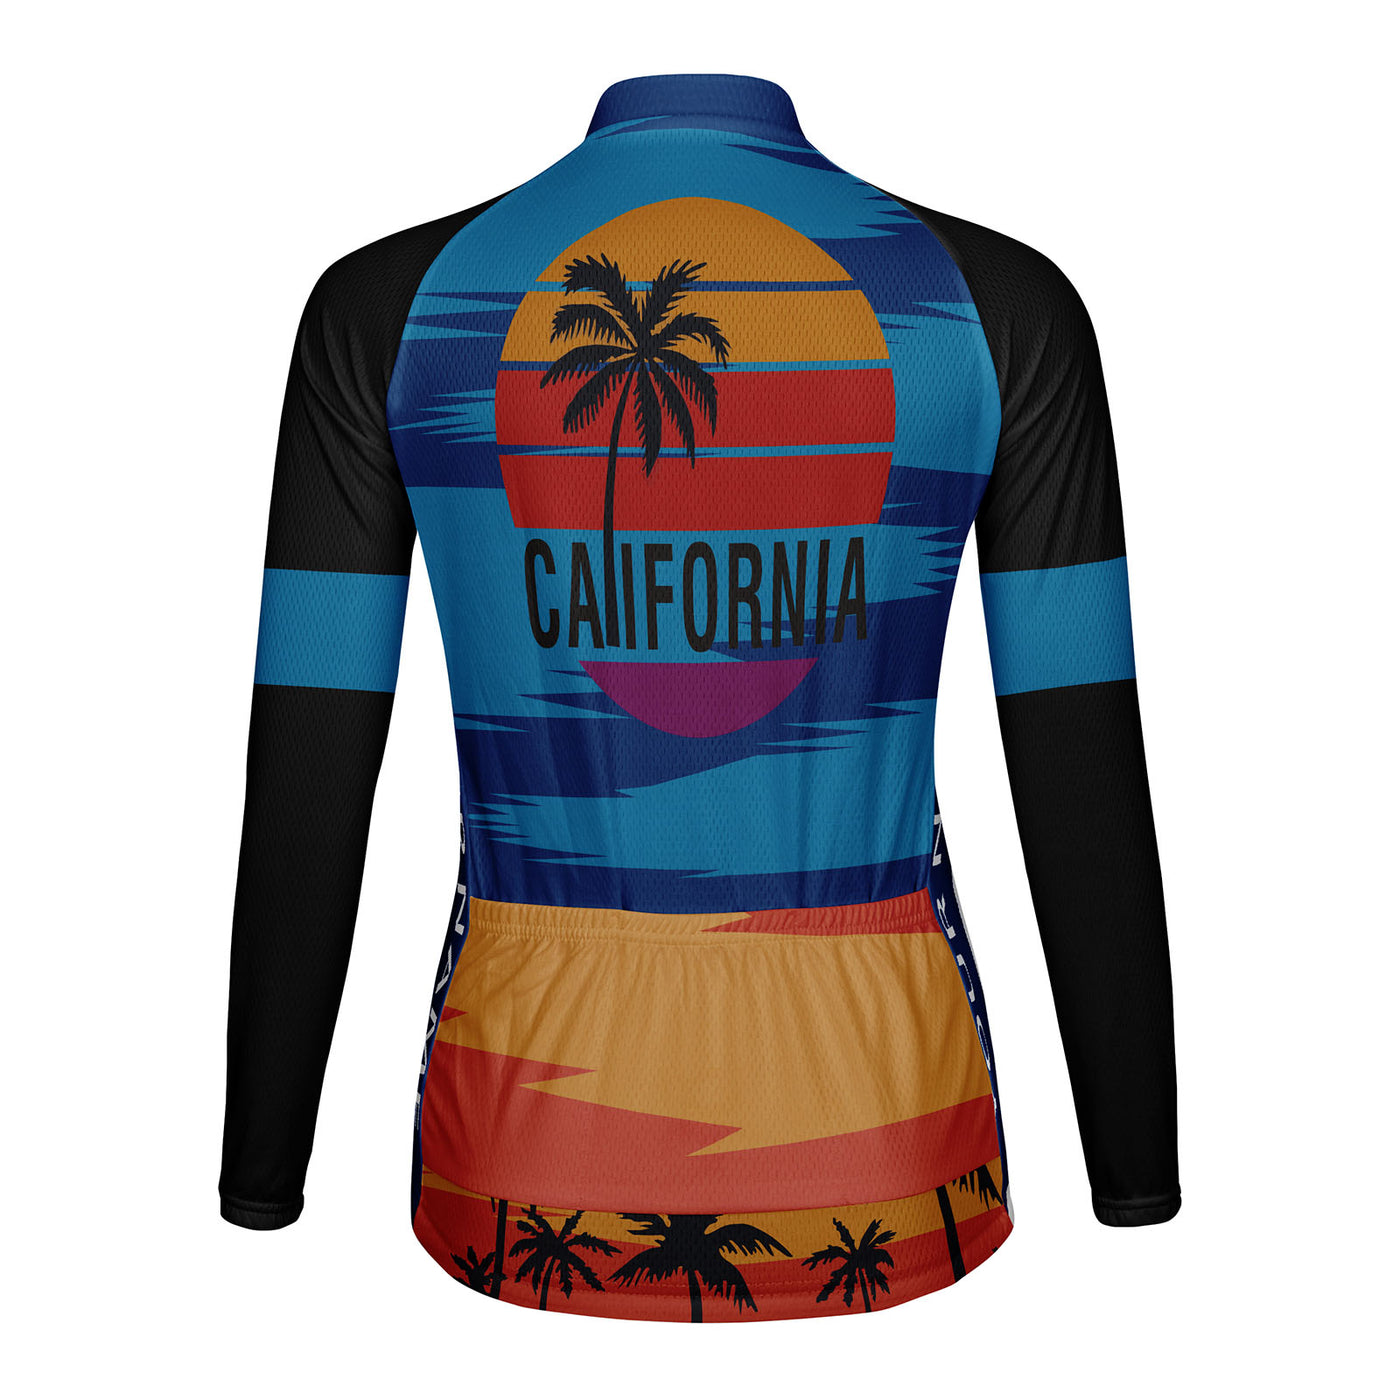 Customized California Women's Cycling Jersey Long Sleeve